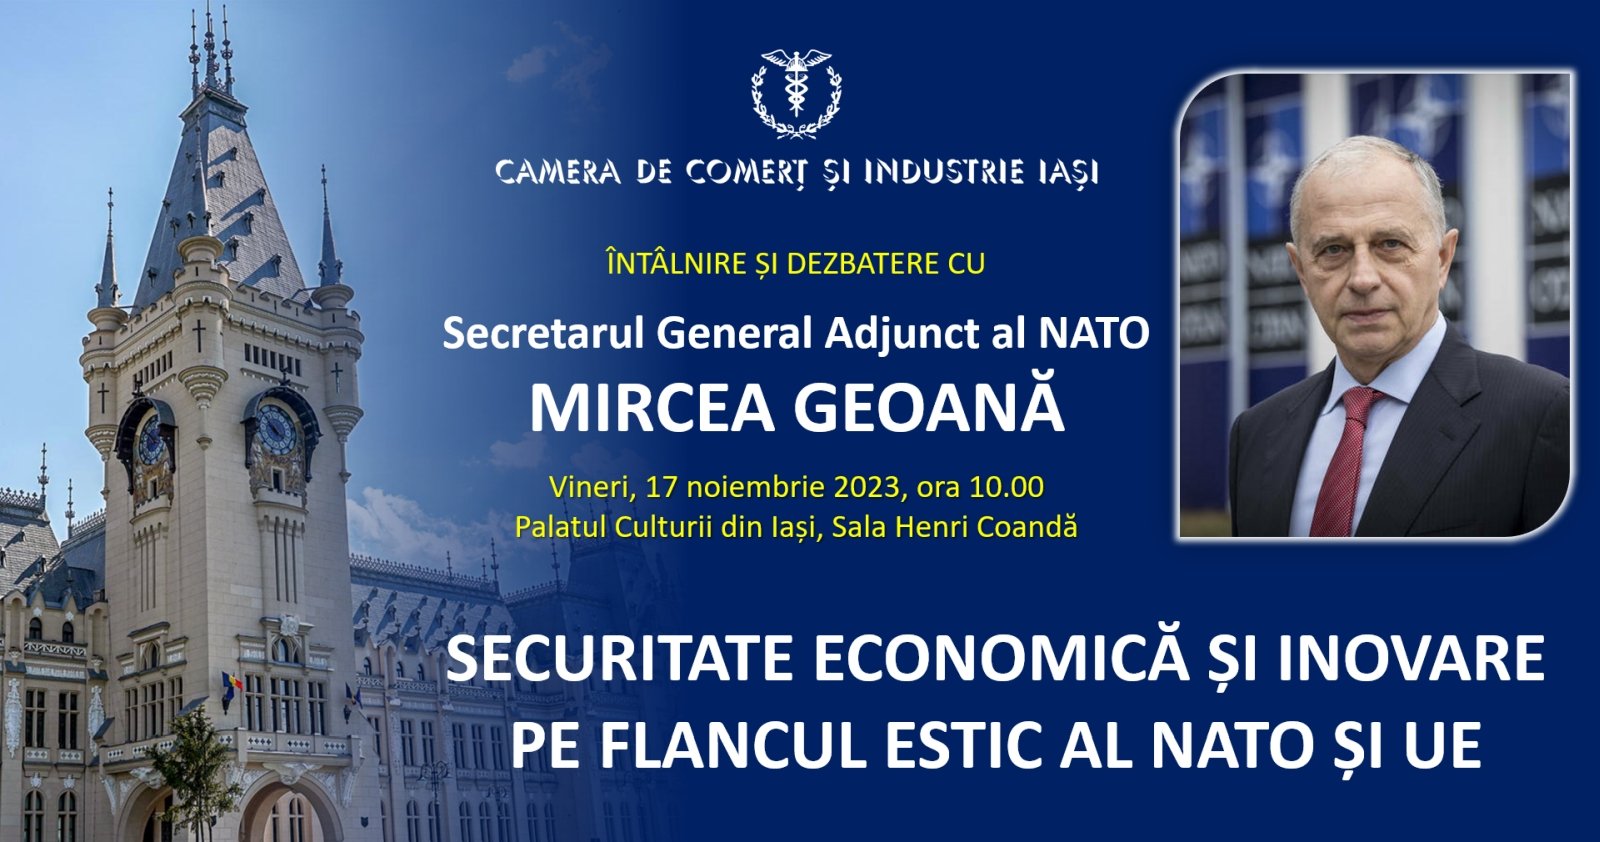  Mircea Geoană, adjunctul NATO, ajunge vineri 17 noiembrie la Iaşi, la o dezbatere